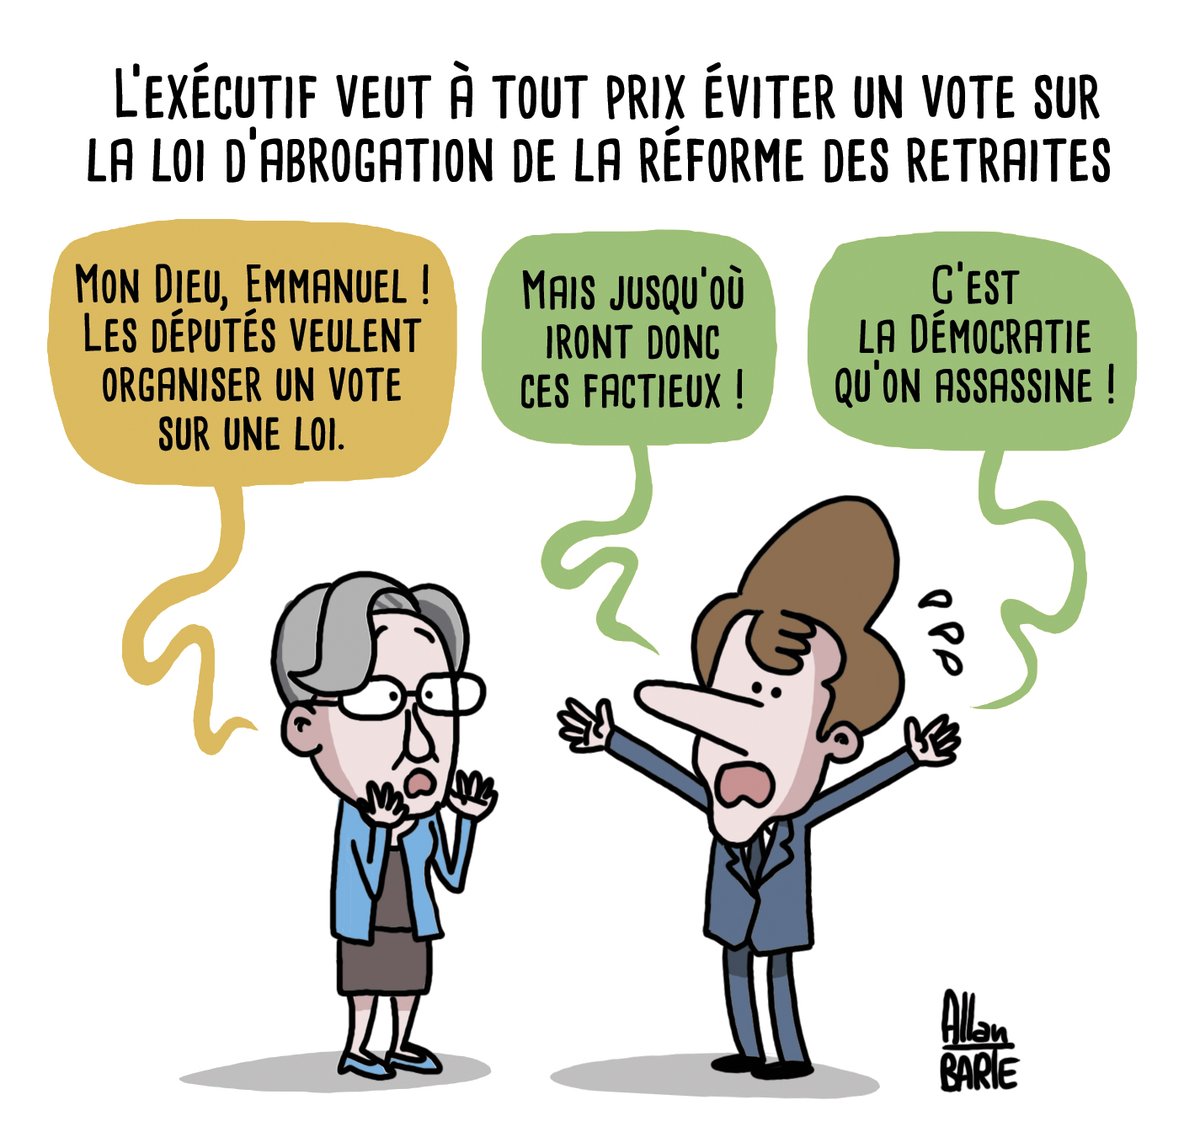 Les manifs, c'est non ! Un référendum, c'est non ! Un vote de l'Assemblée Nationale, c'est toujours non ?

Après les articles 47-1, 49.3 & 44.3, l'exécutif tenté par l'article 40.

#PPL #DirectAN #PPLLiot #Liot #Borne #Macron #ReformeDesRetraites